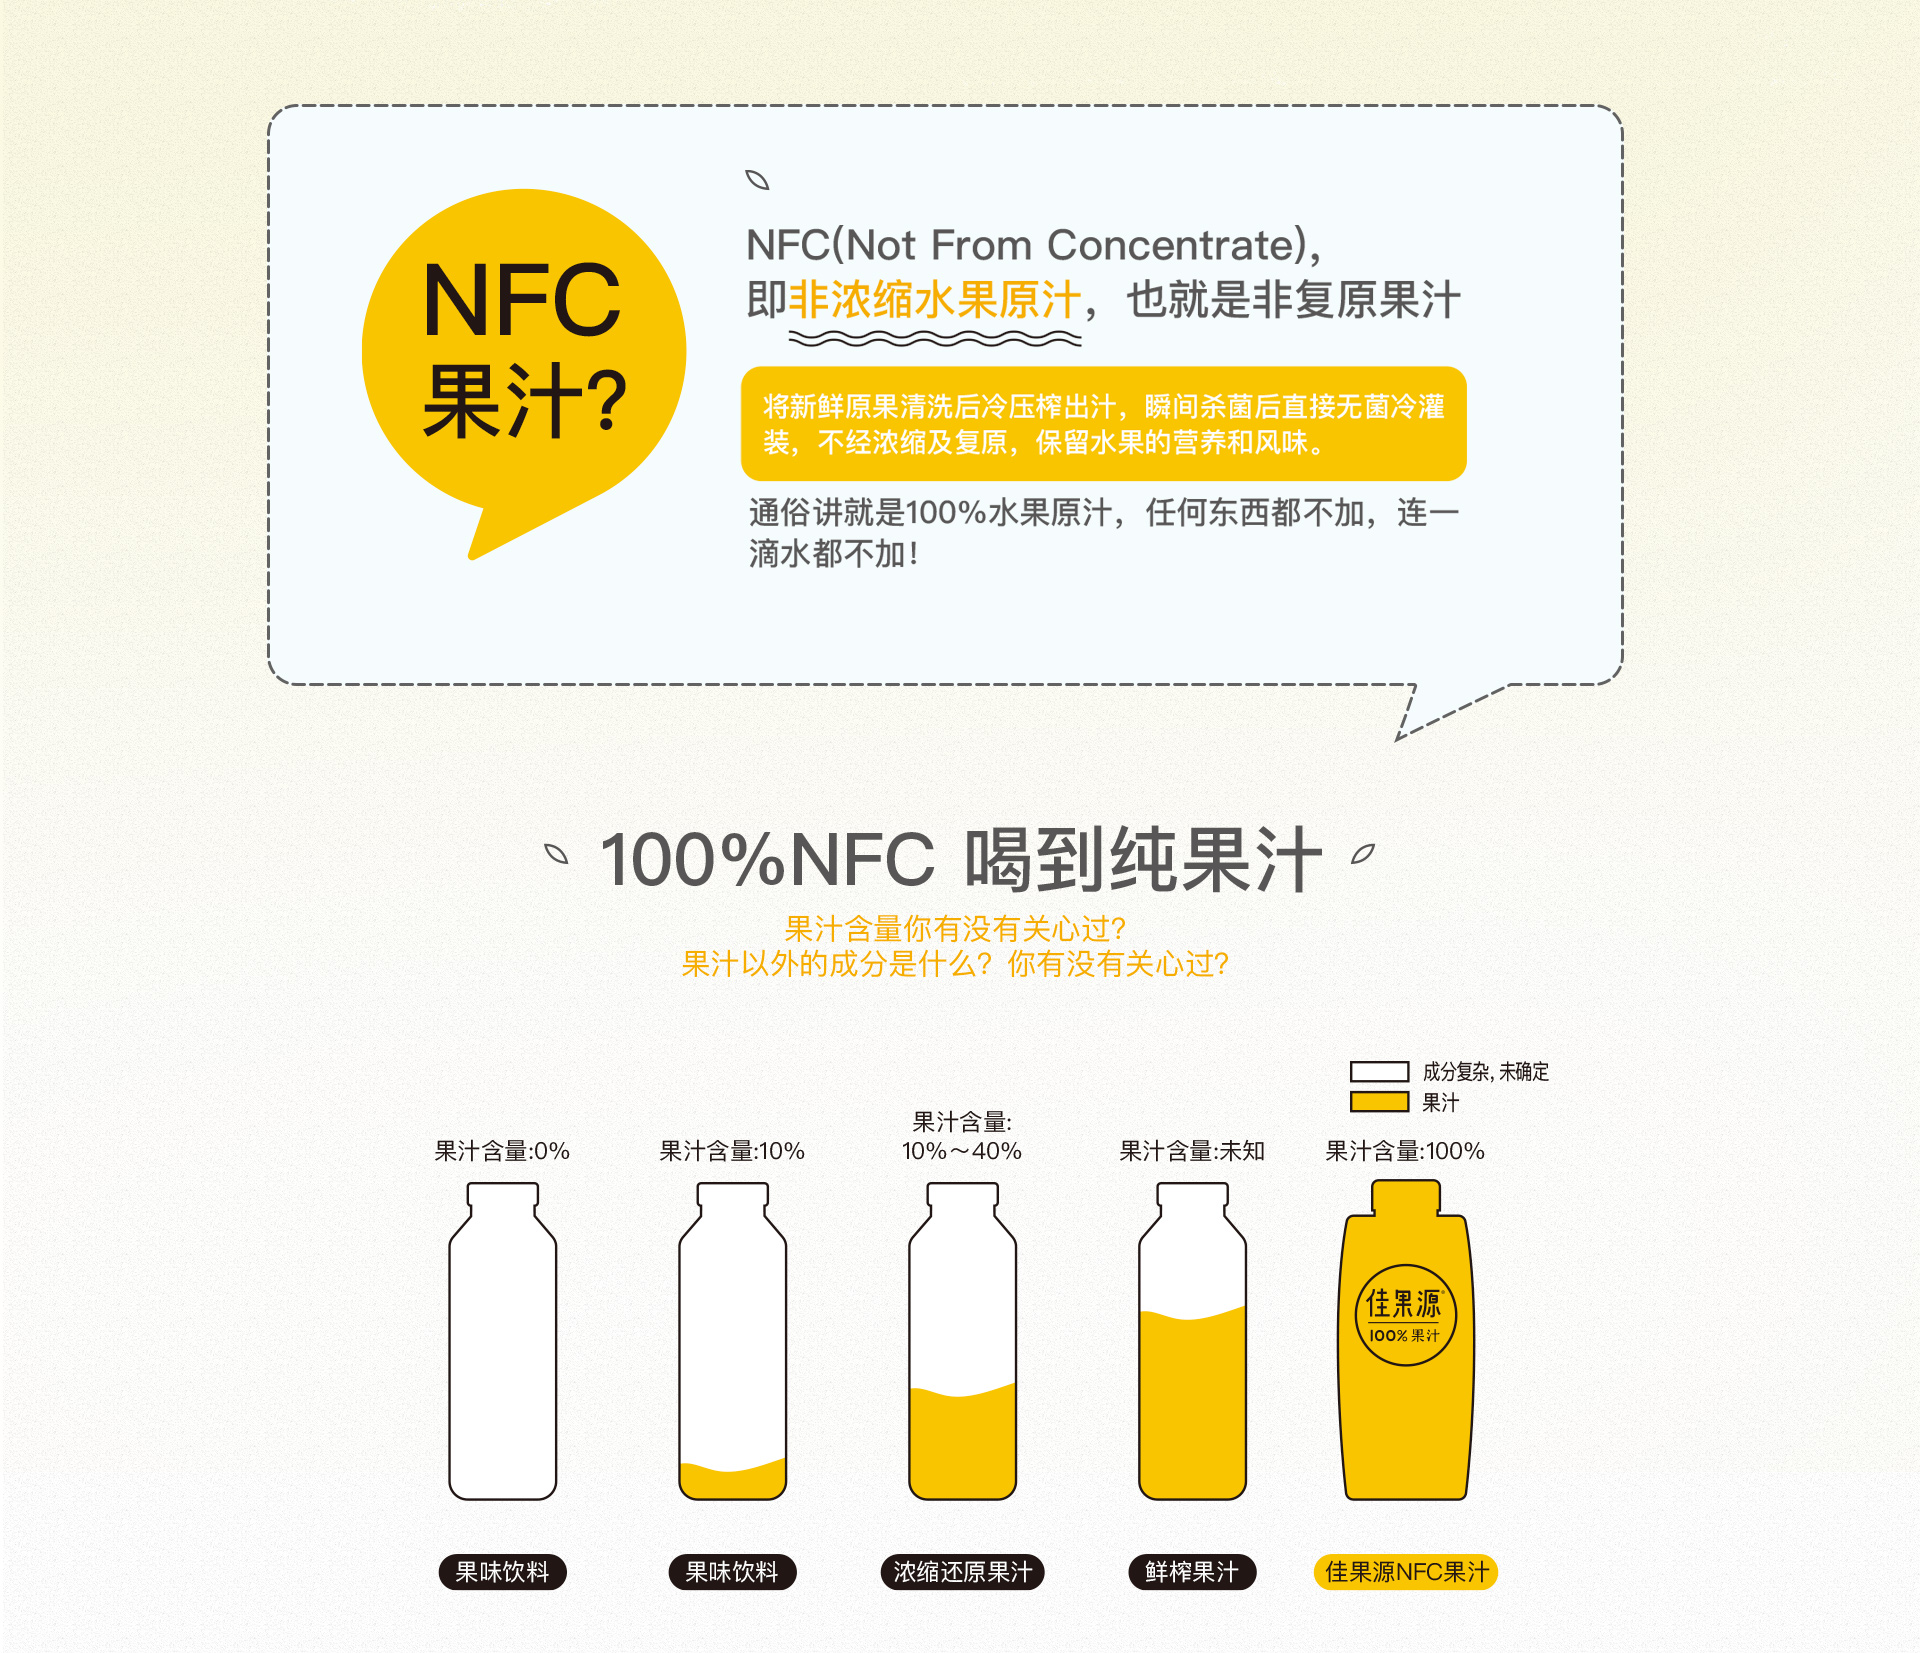 佳果源-NFC版首页-new副本_10